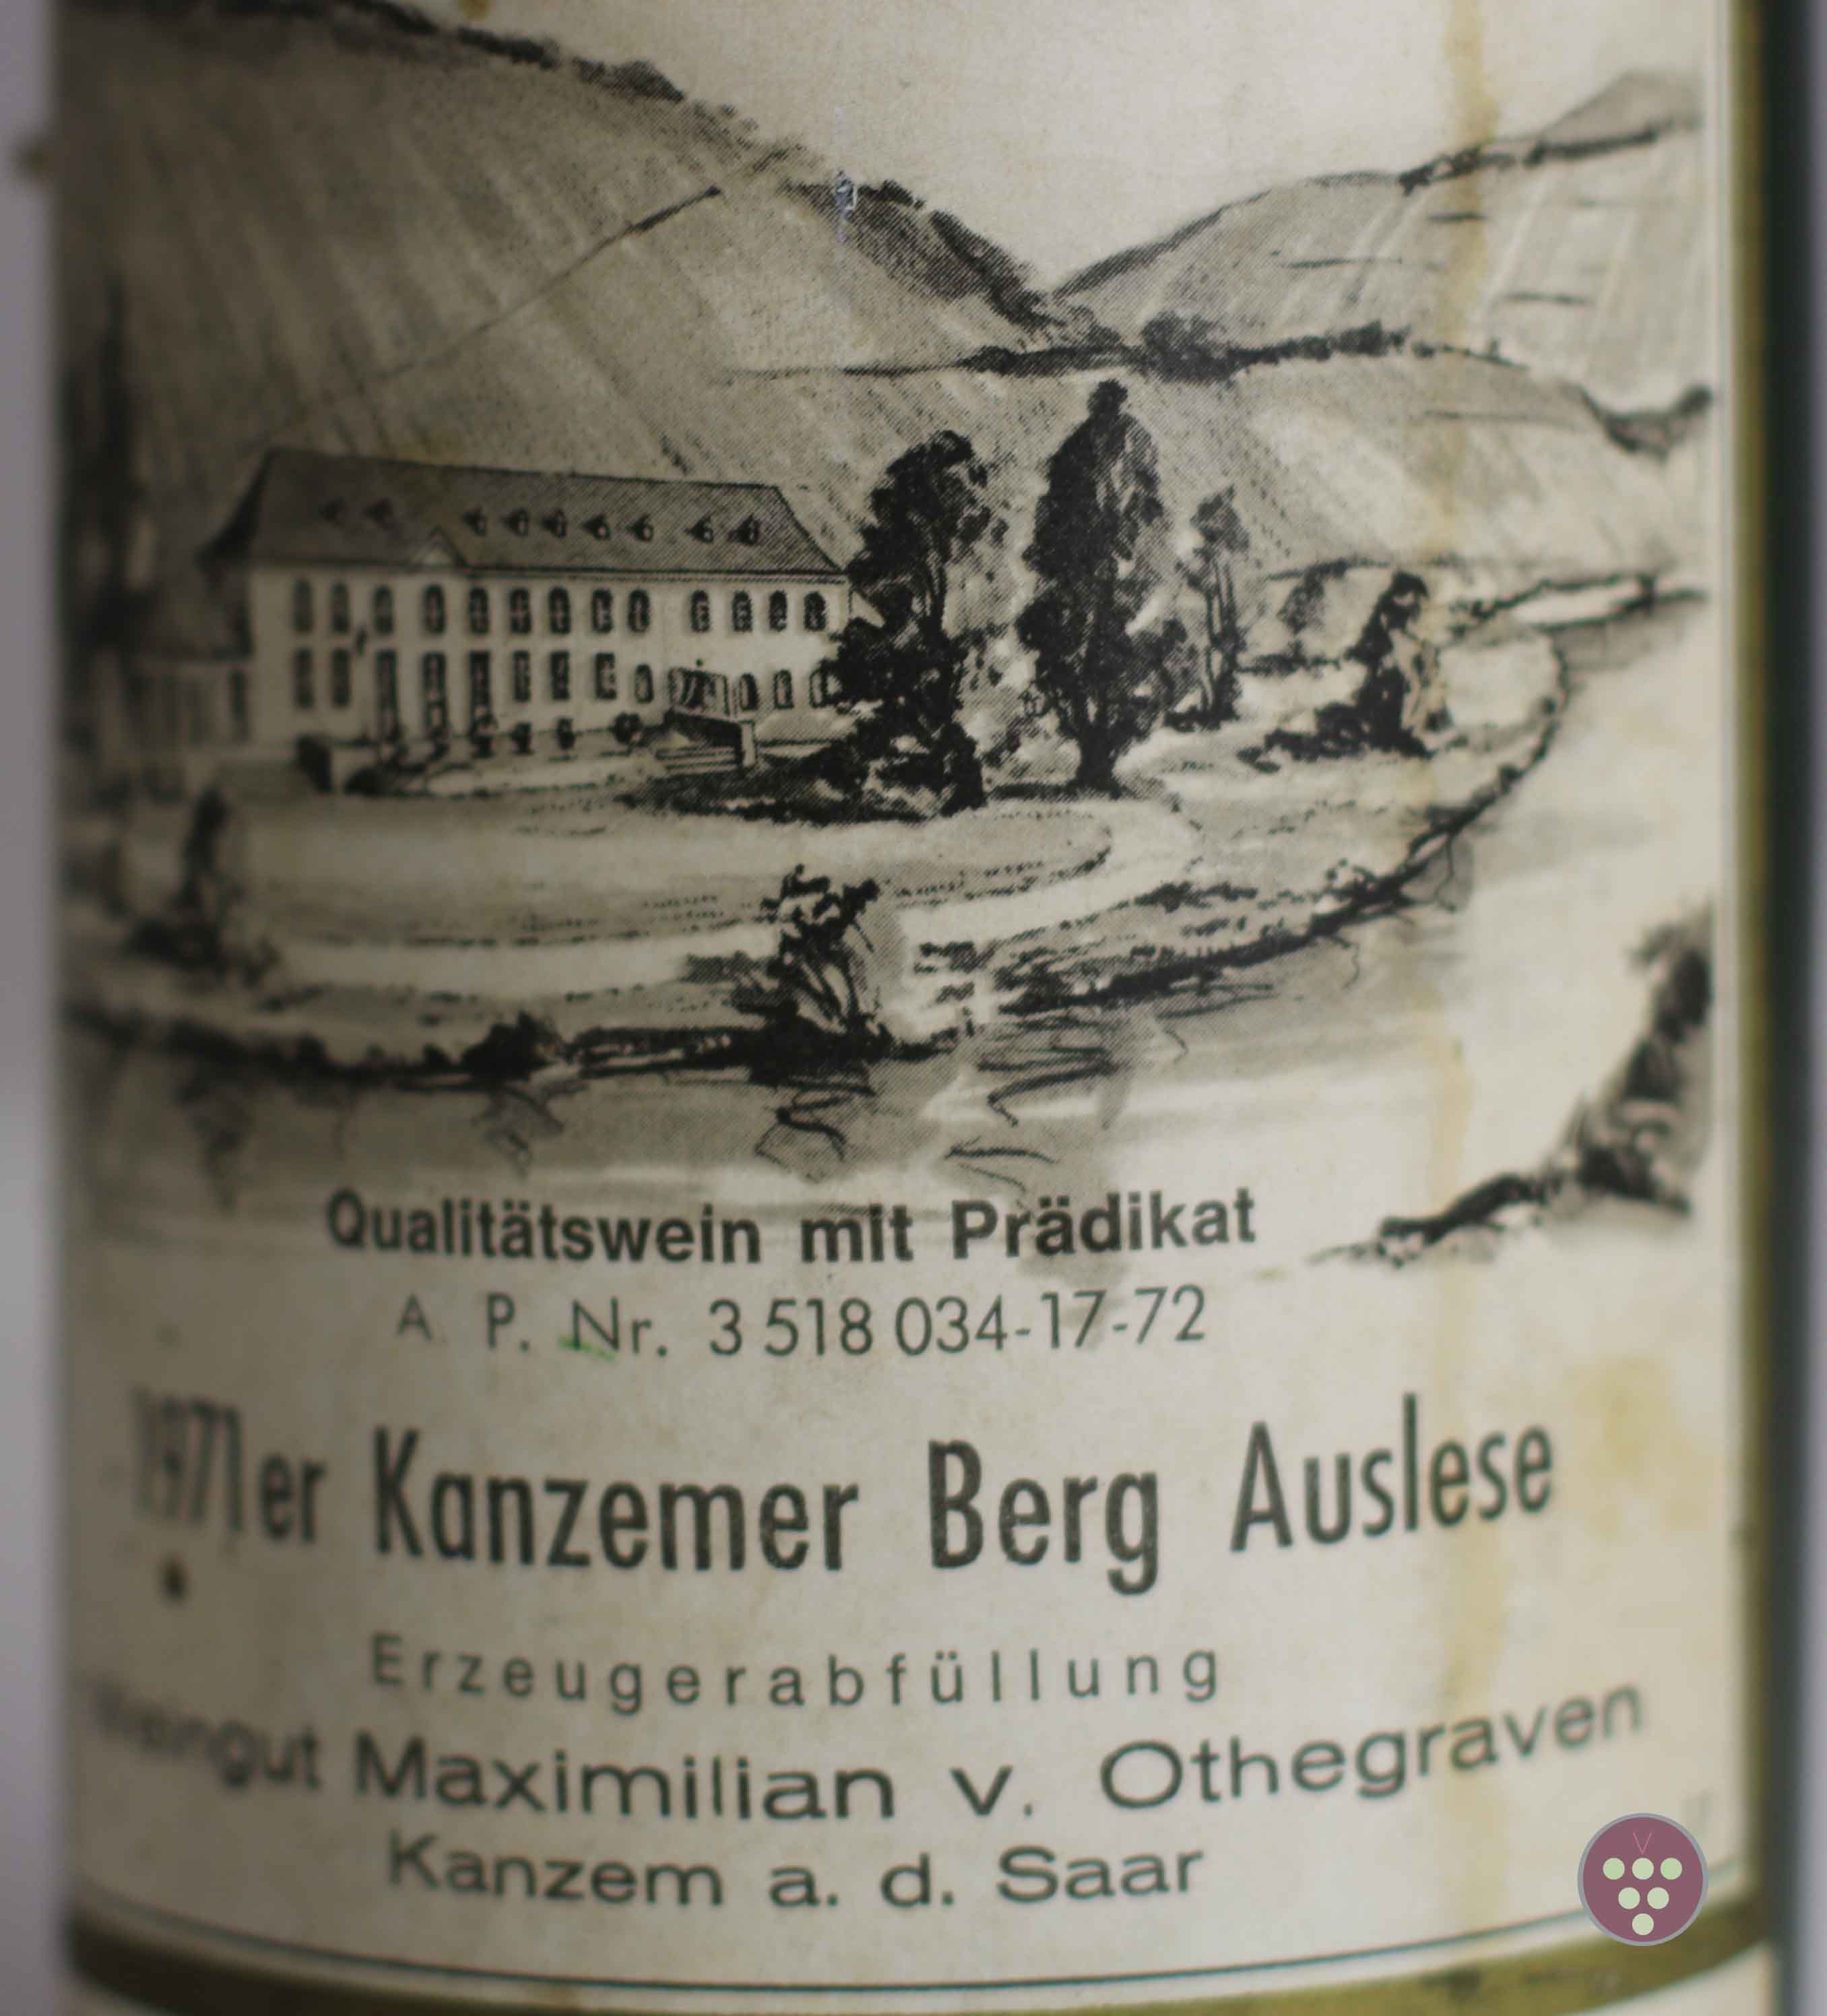 von Othegraven | Riesling Auslese 1971 - Kanzemer Berg